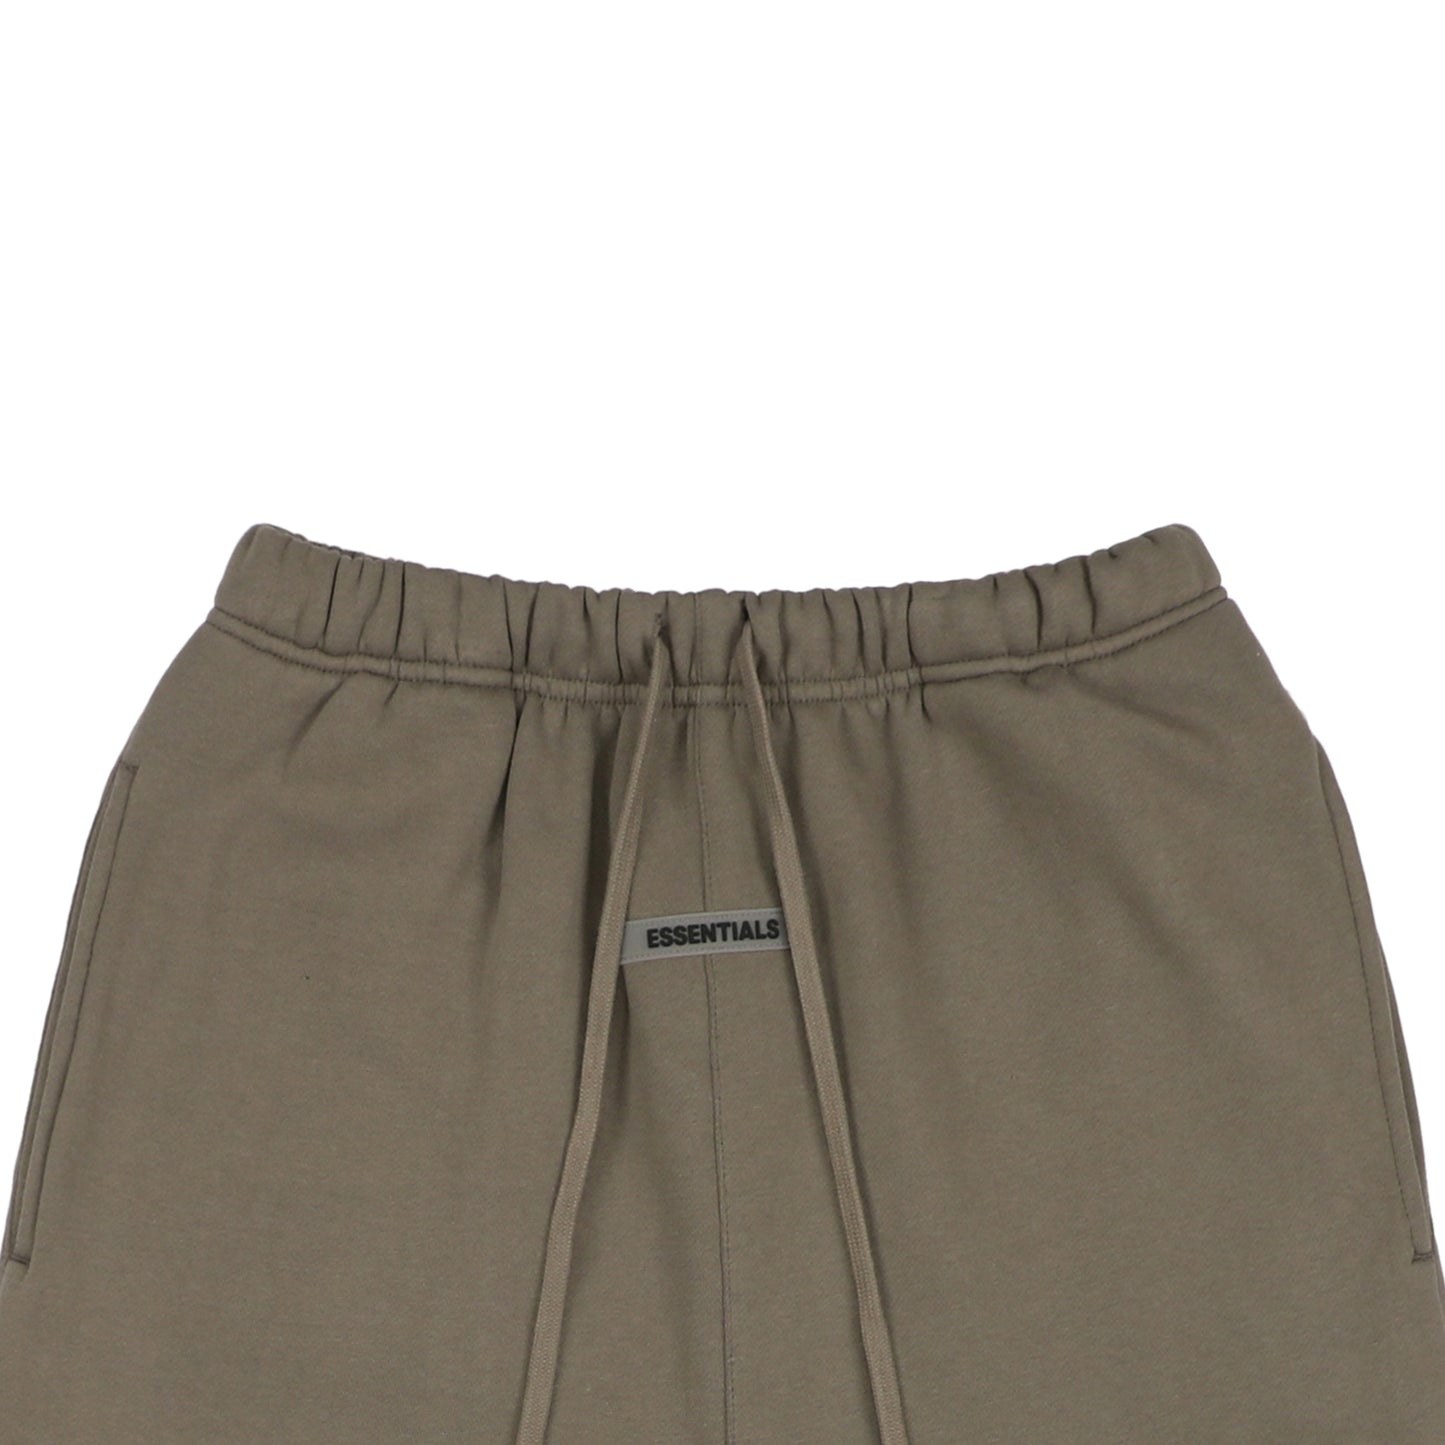 FOG Dark Brown E55ential5 Shorts